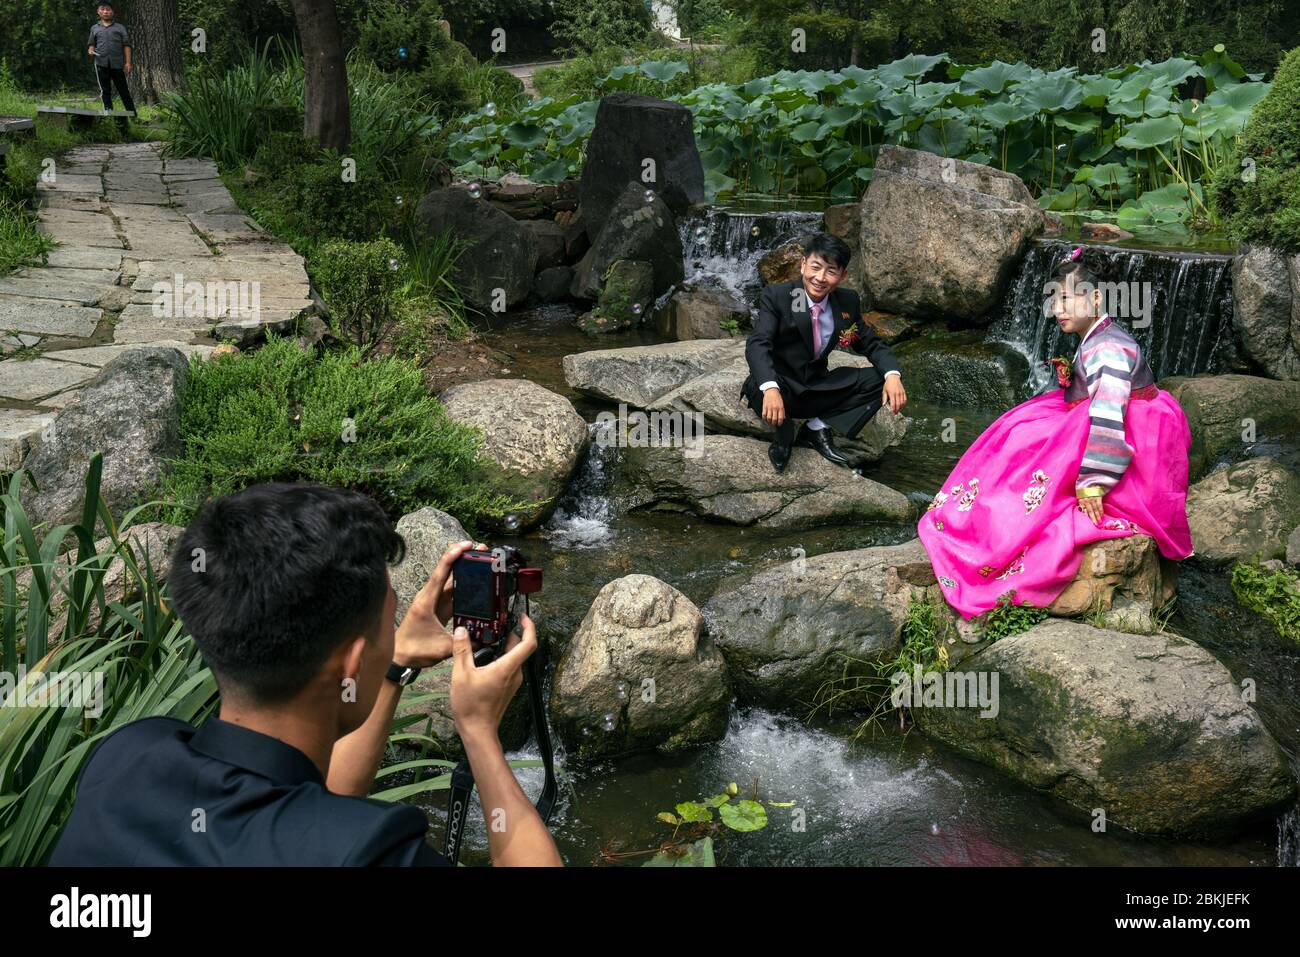 Corée du Nord, Pyongyang, marié et épouse dans le parc Moranbong Banque D'Images